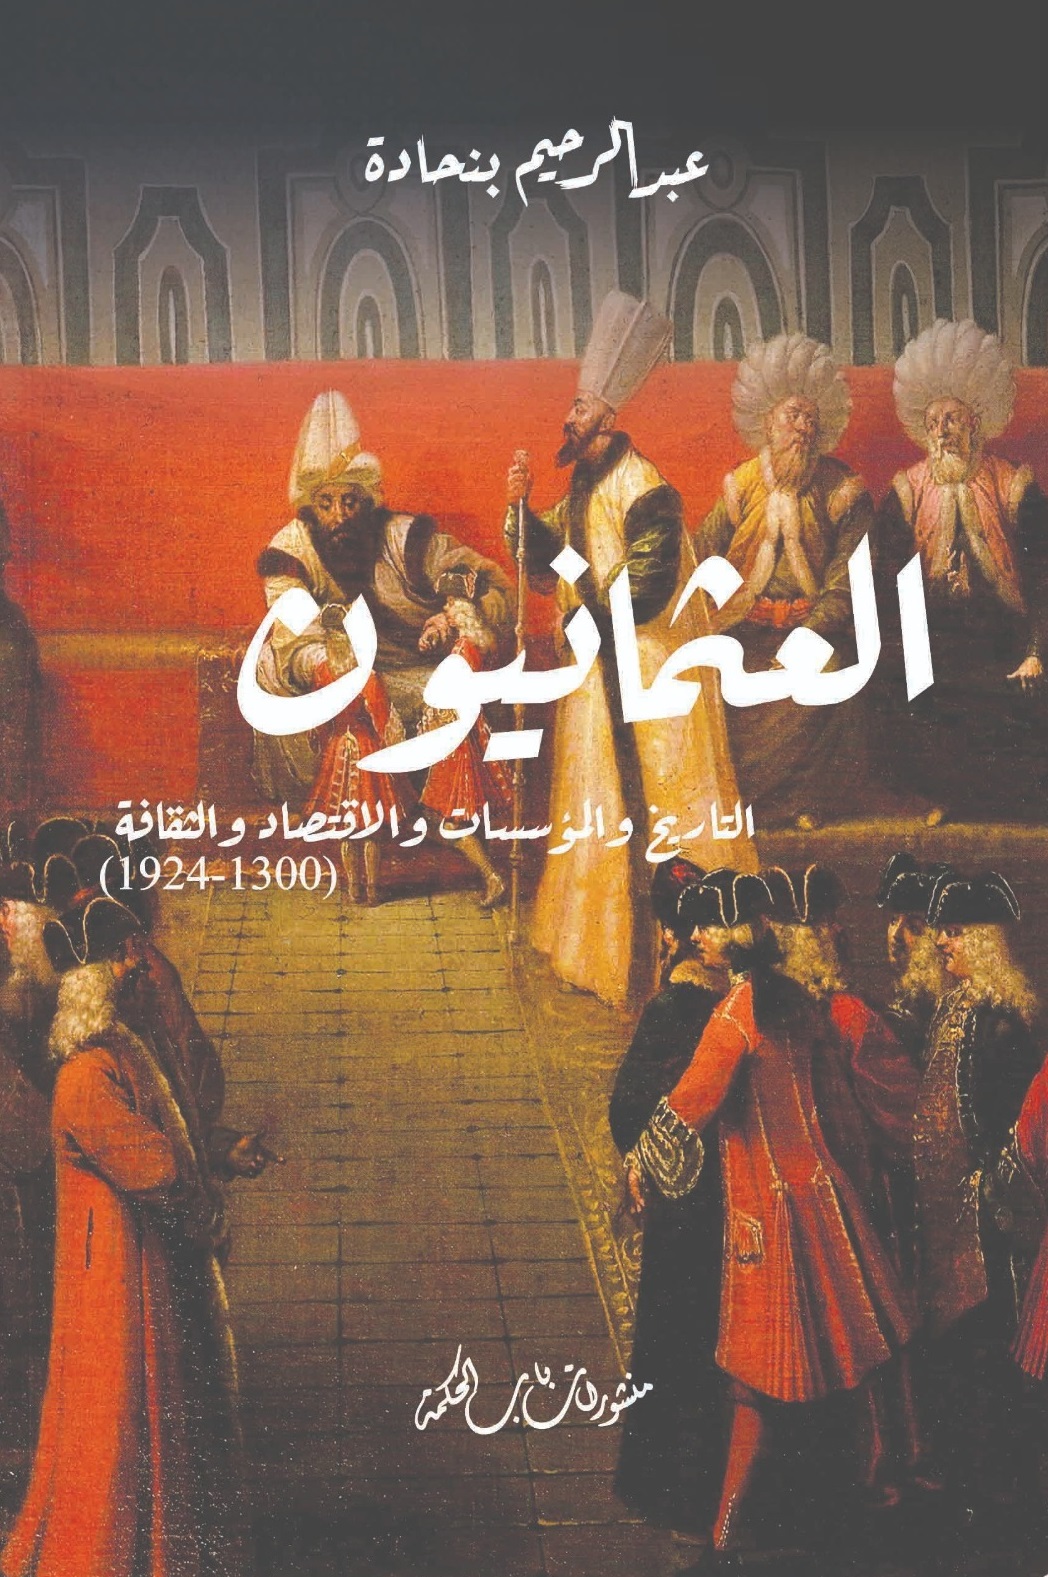 العثمانيون ؛ التاريخ والمؤسسات والاقتصاد والثقافة ( 1300 - 1924 )